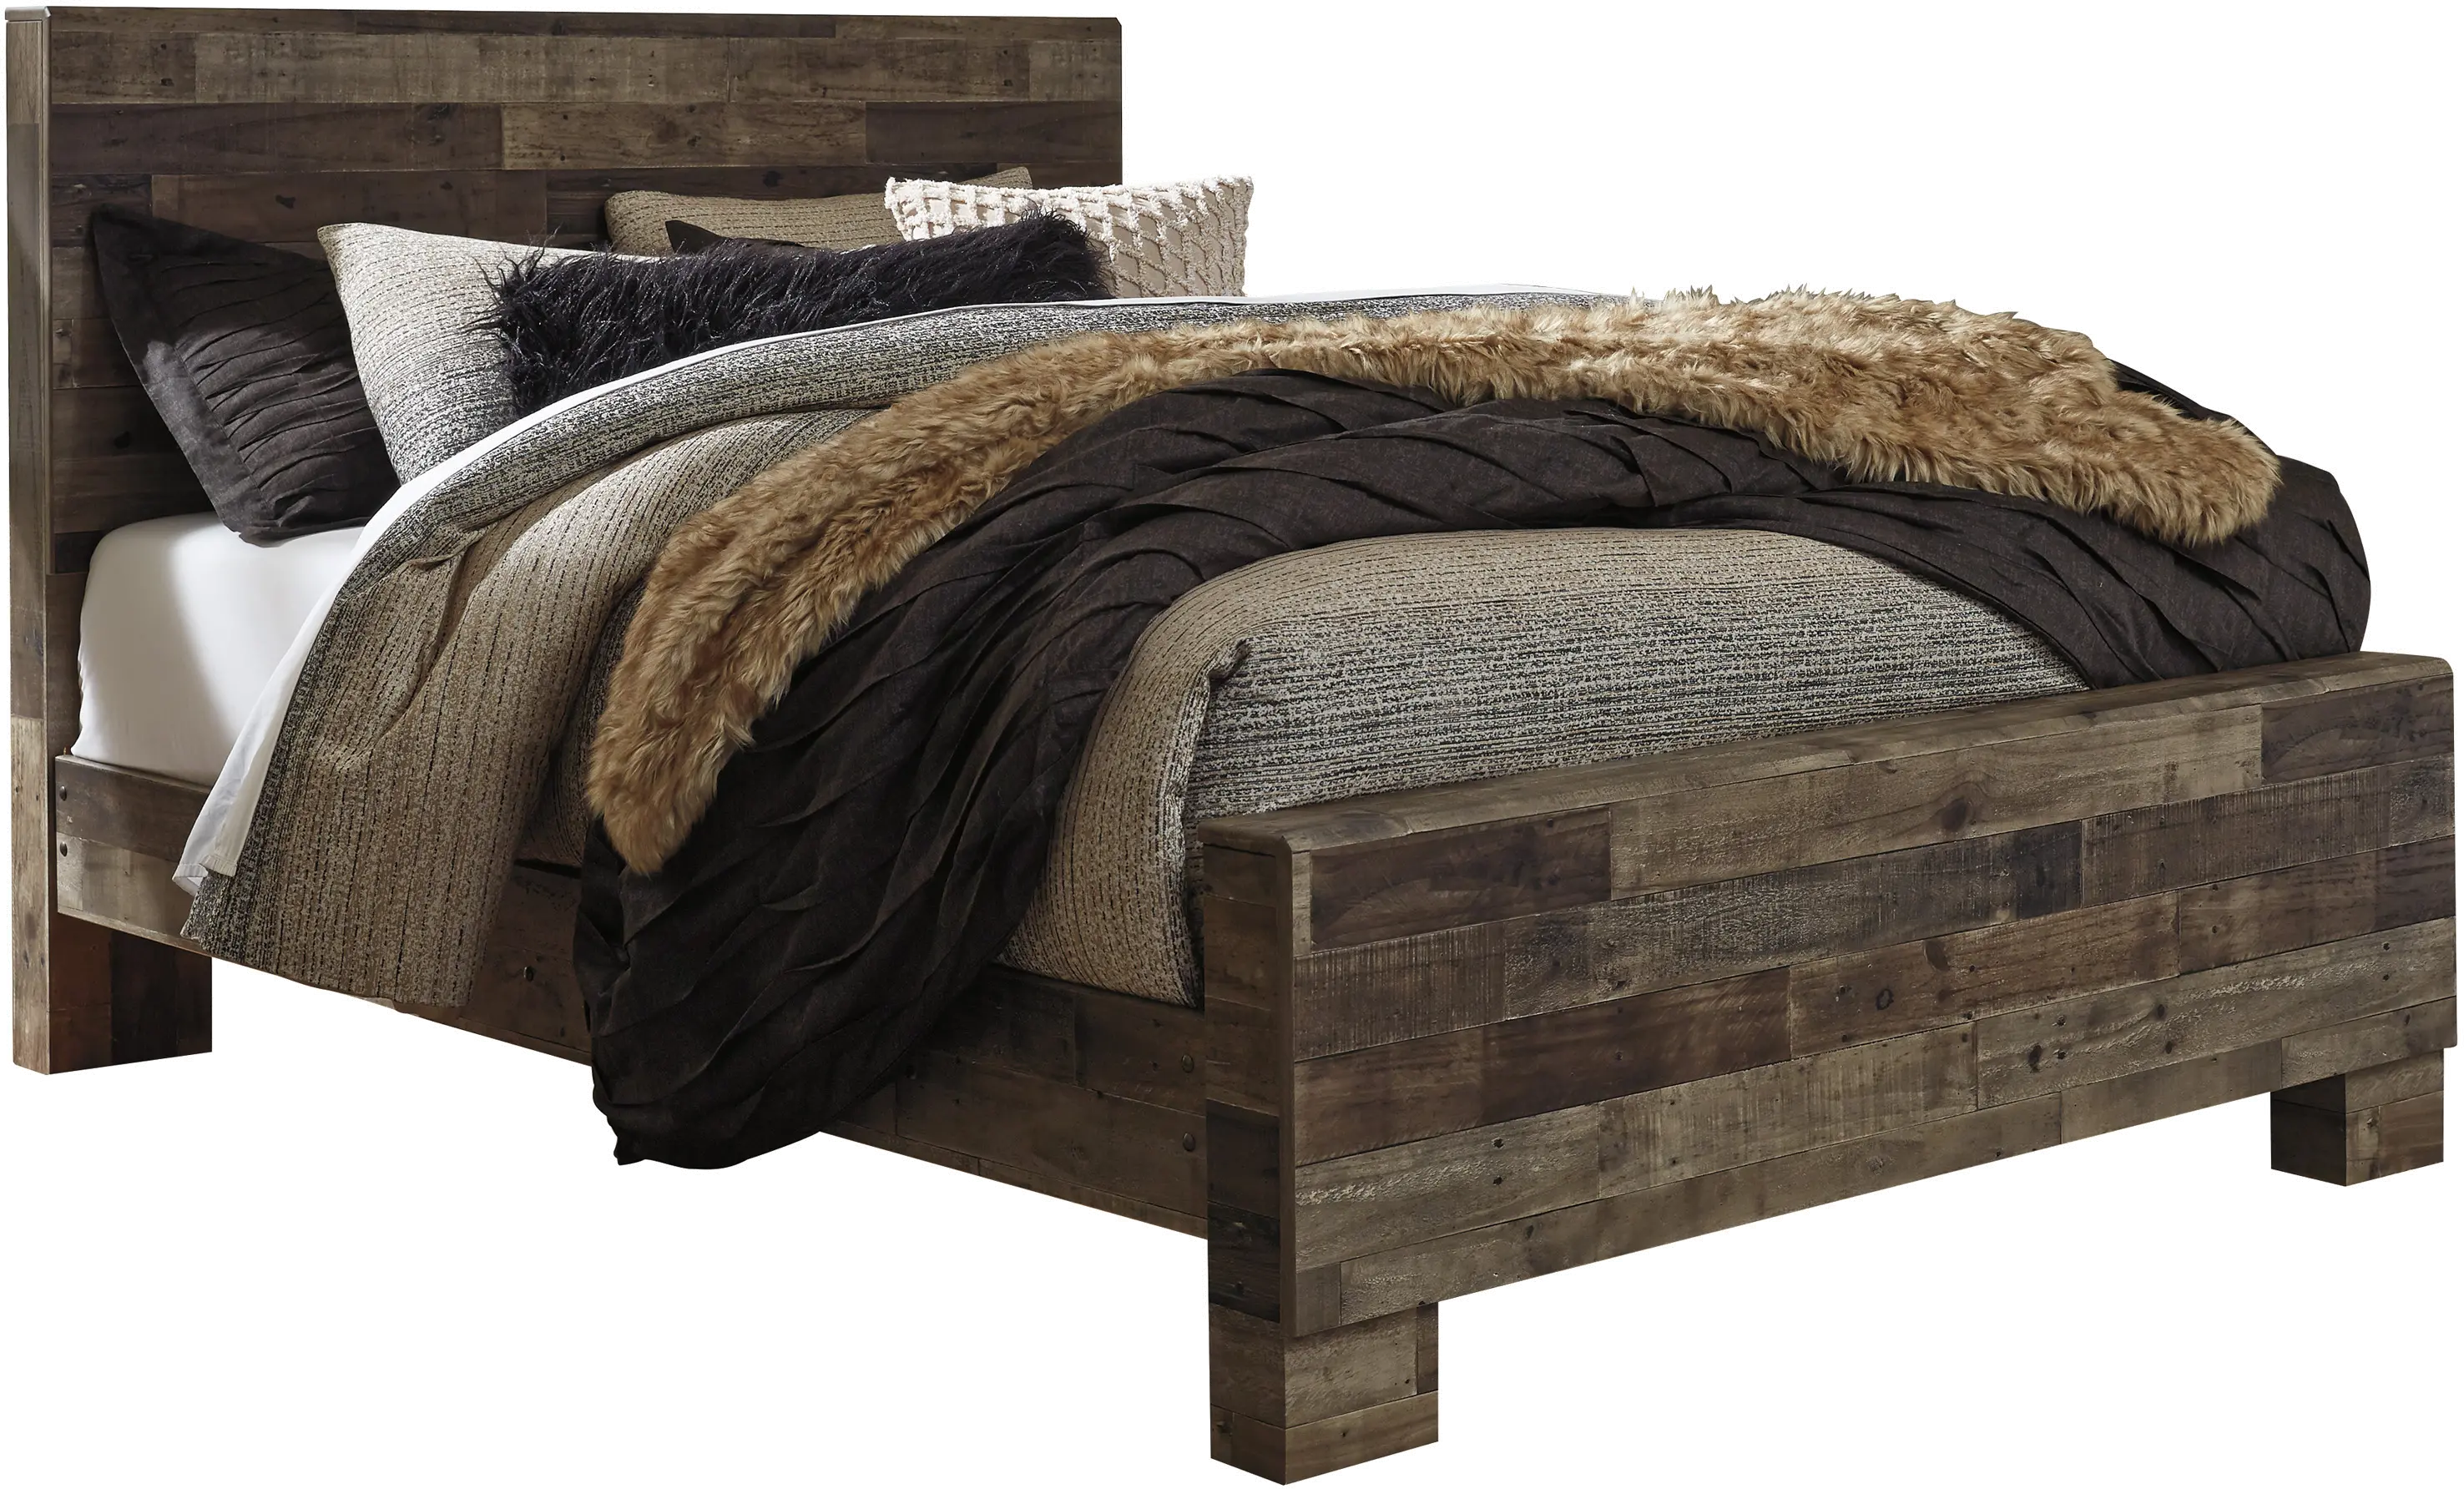 Broadmore Rustic Queen Bed